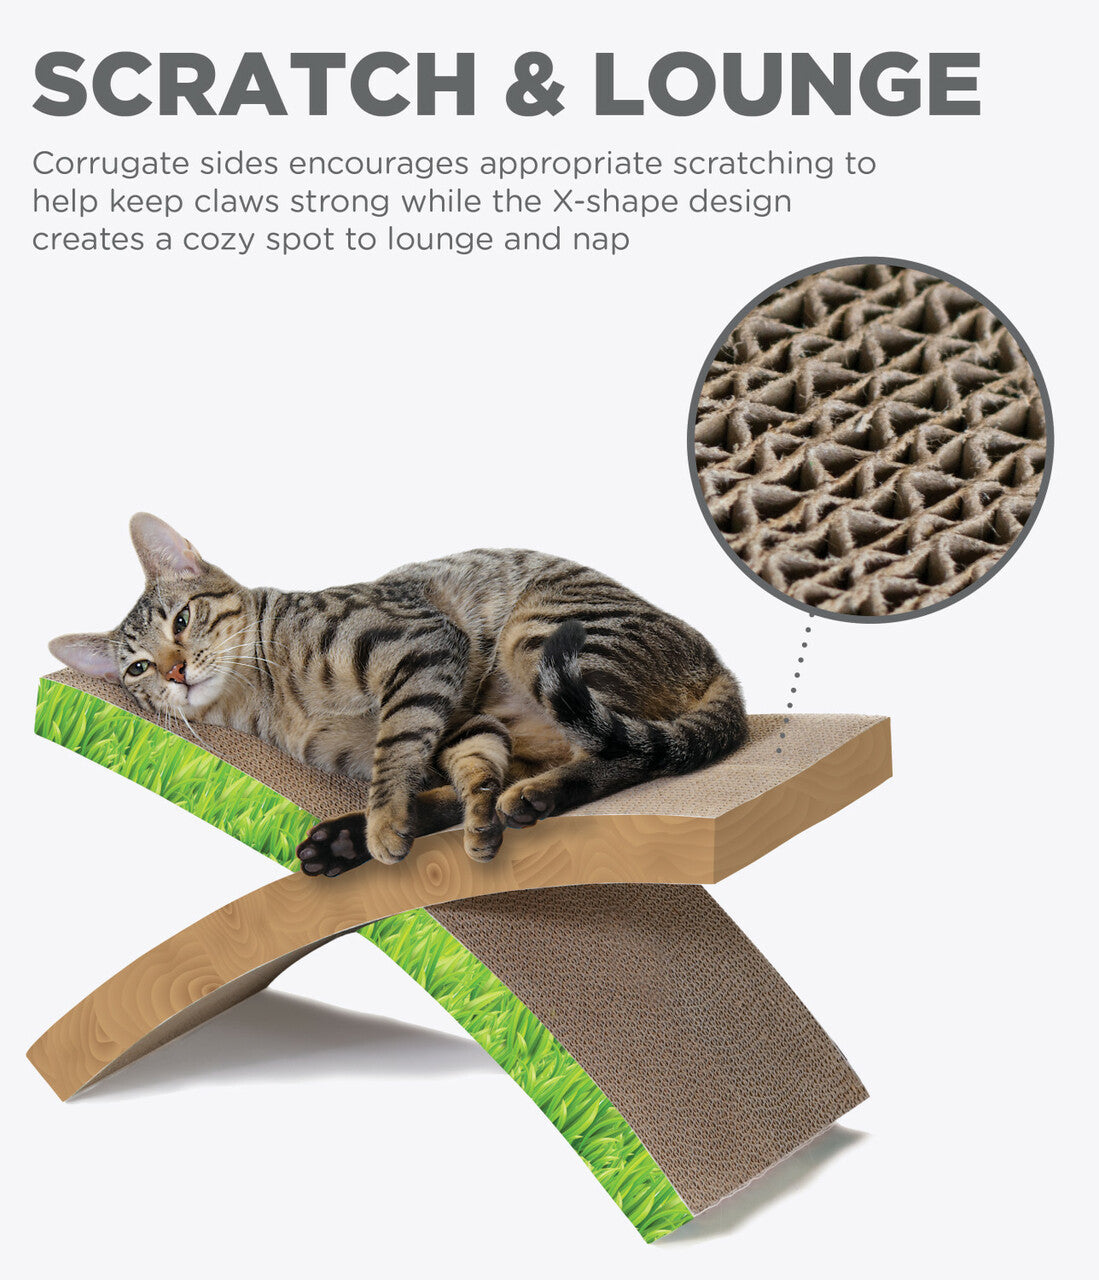 The Petstages Easy Life Hammock Cat Scratcher